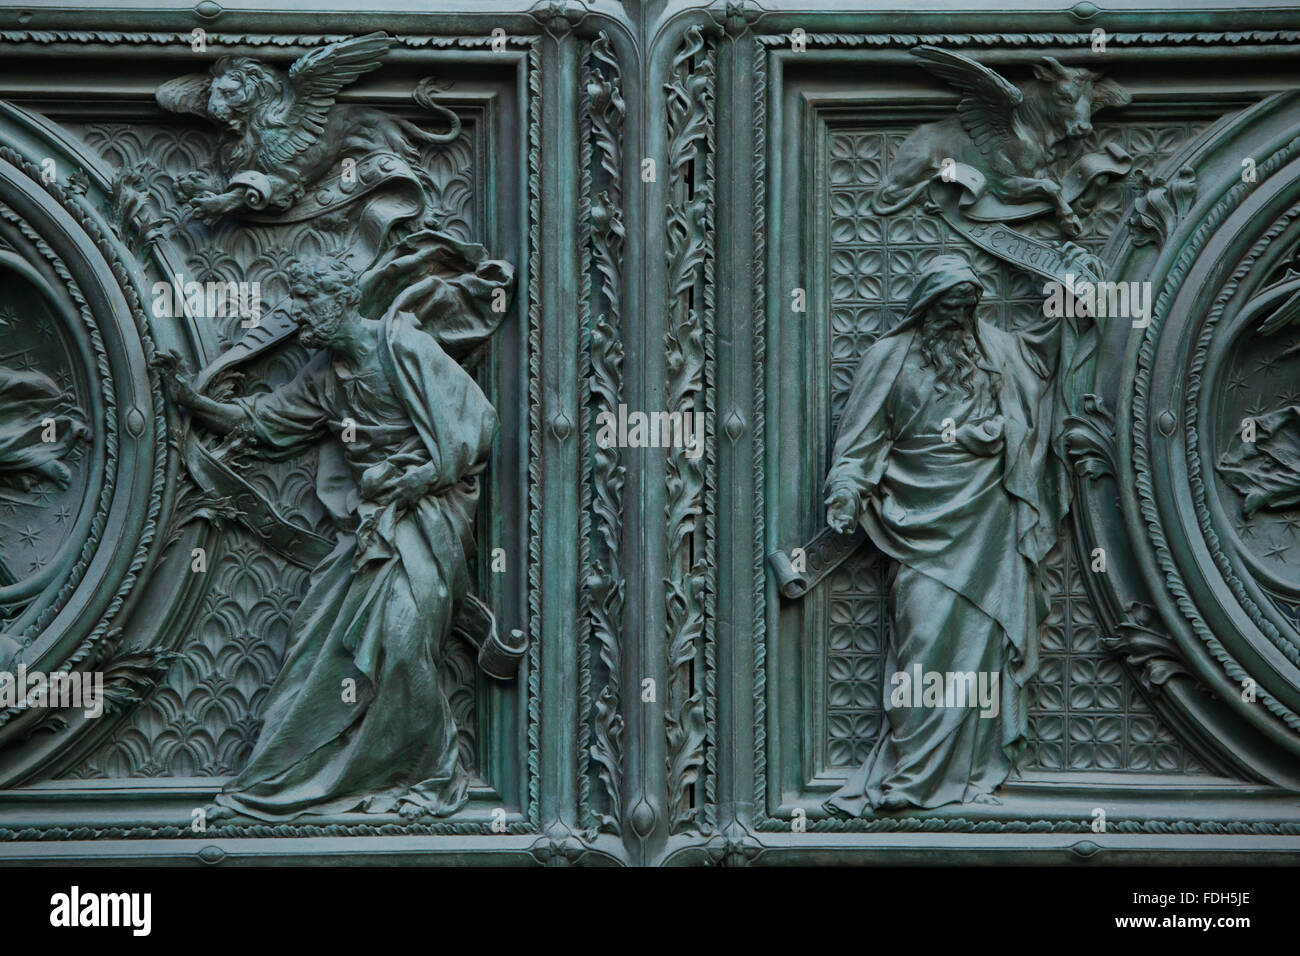 Les évangélistes Saint Marc et saint Luc. Détail de la porte de bronze de la principale cathédrale de Milan (Duomo di Milano) à Milan, Italie. Banque D'Images